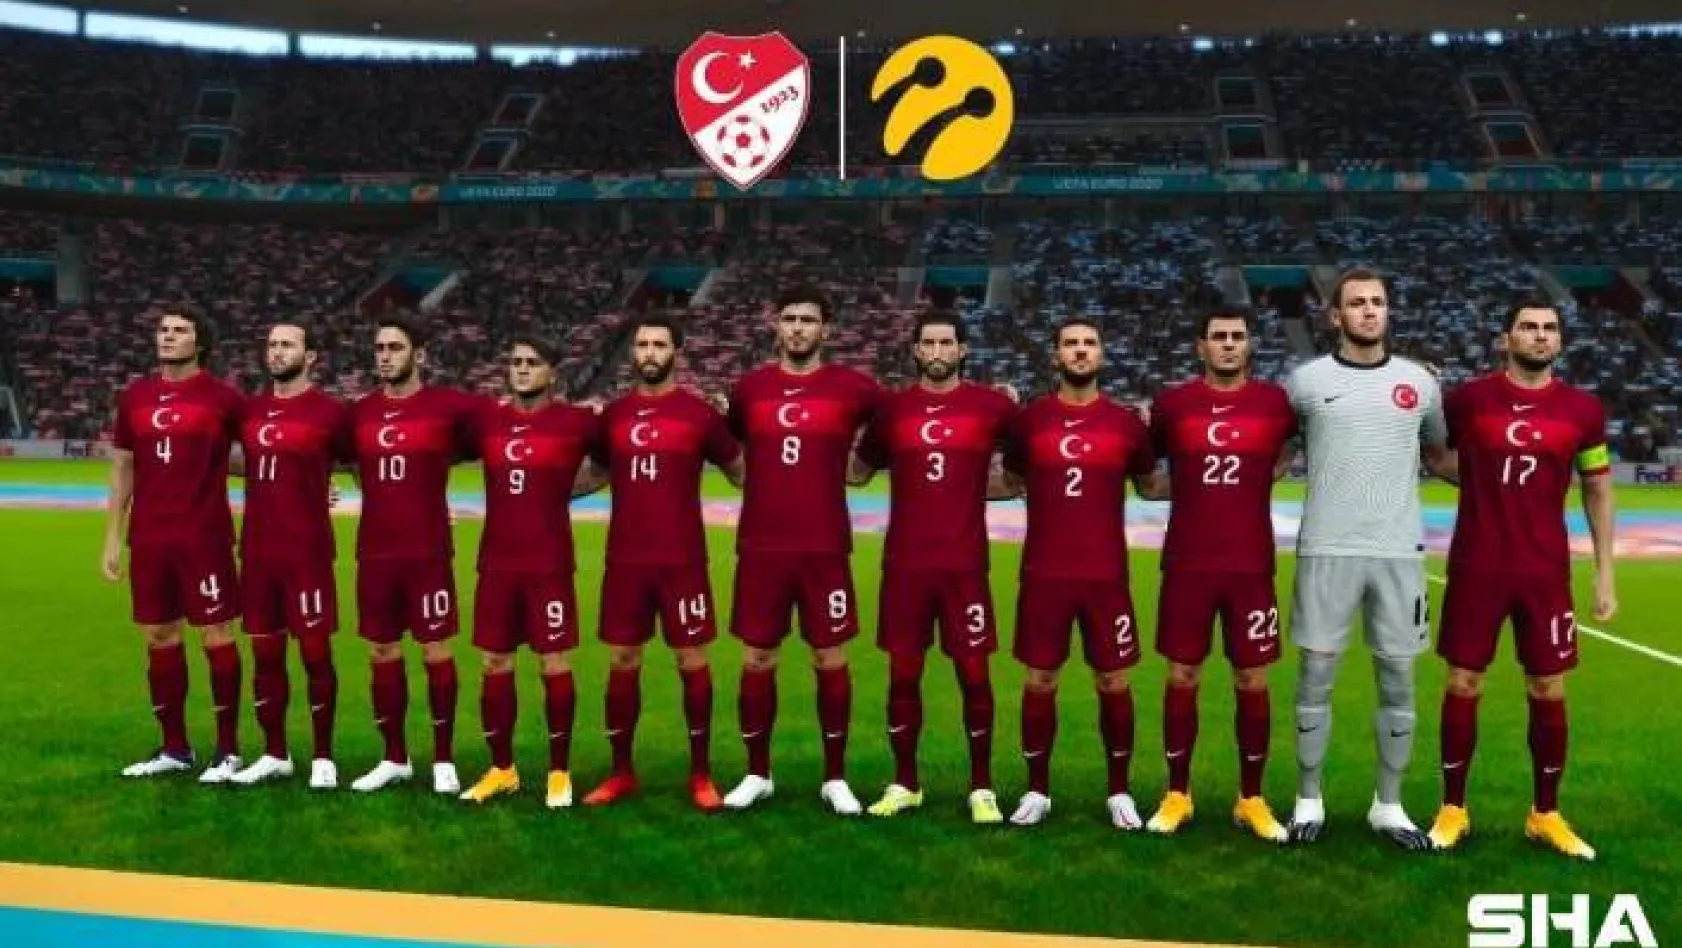 Turkcell, e-Futbol Milli Takımı'nın ana sponsoru oldu